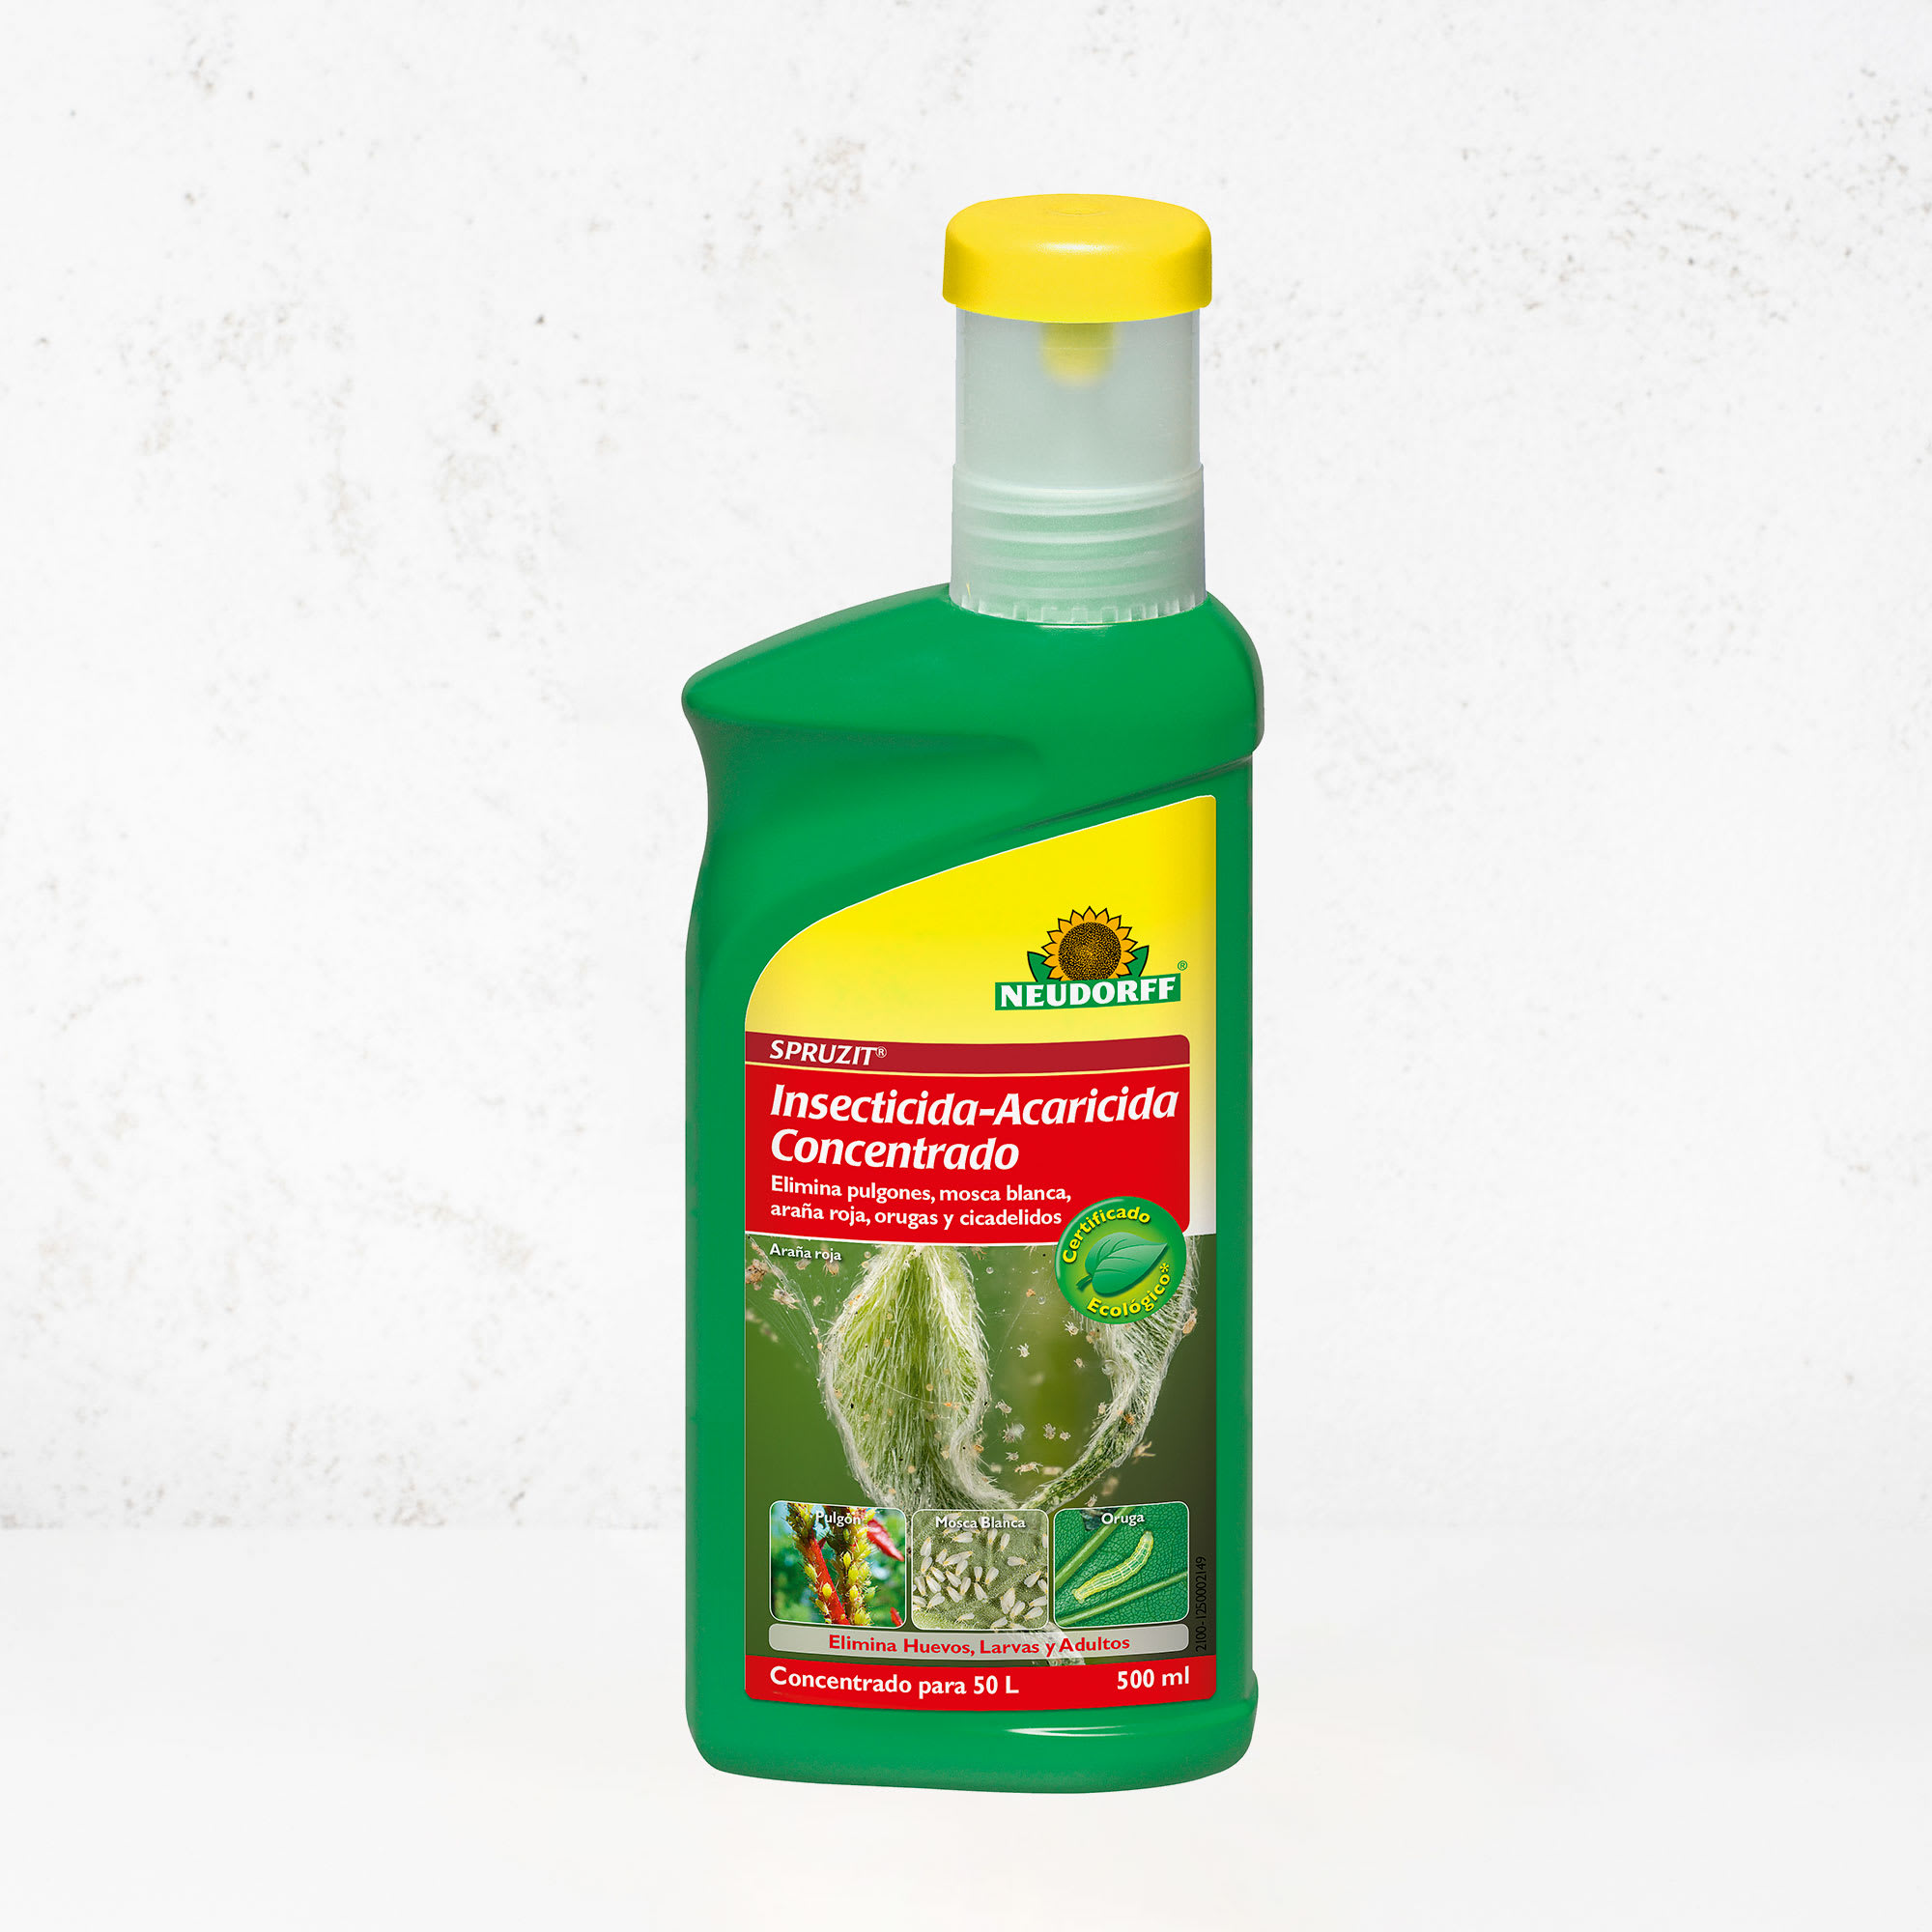 Comprar Insecticida Acaricida Concentrado ECO Spruzit 500 ml Neudorff |  Fronda